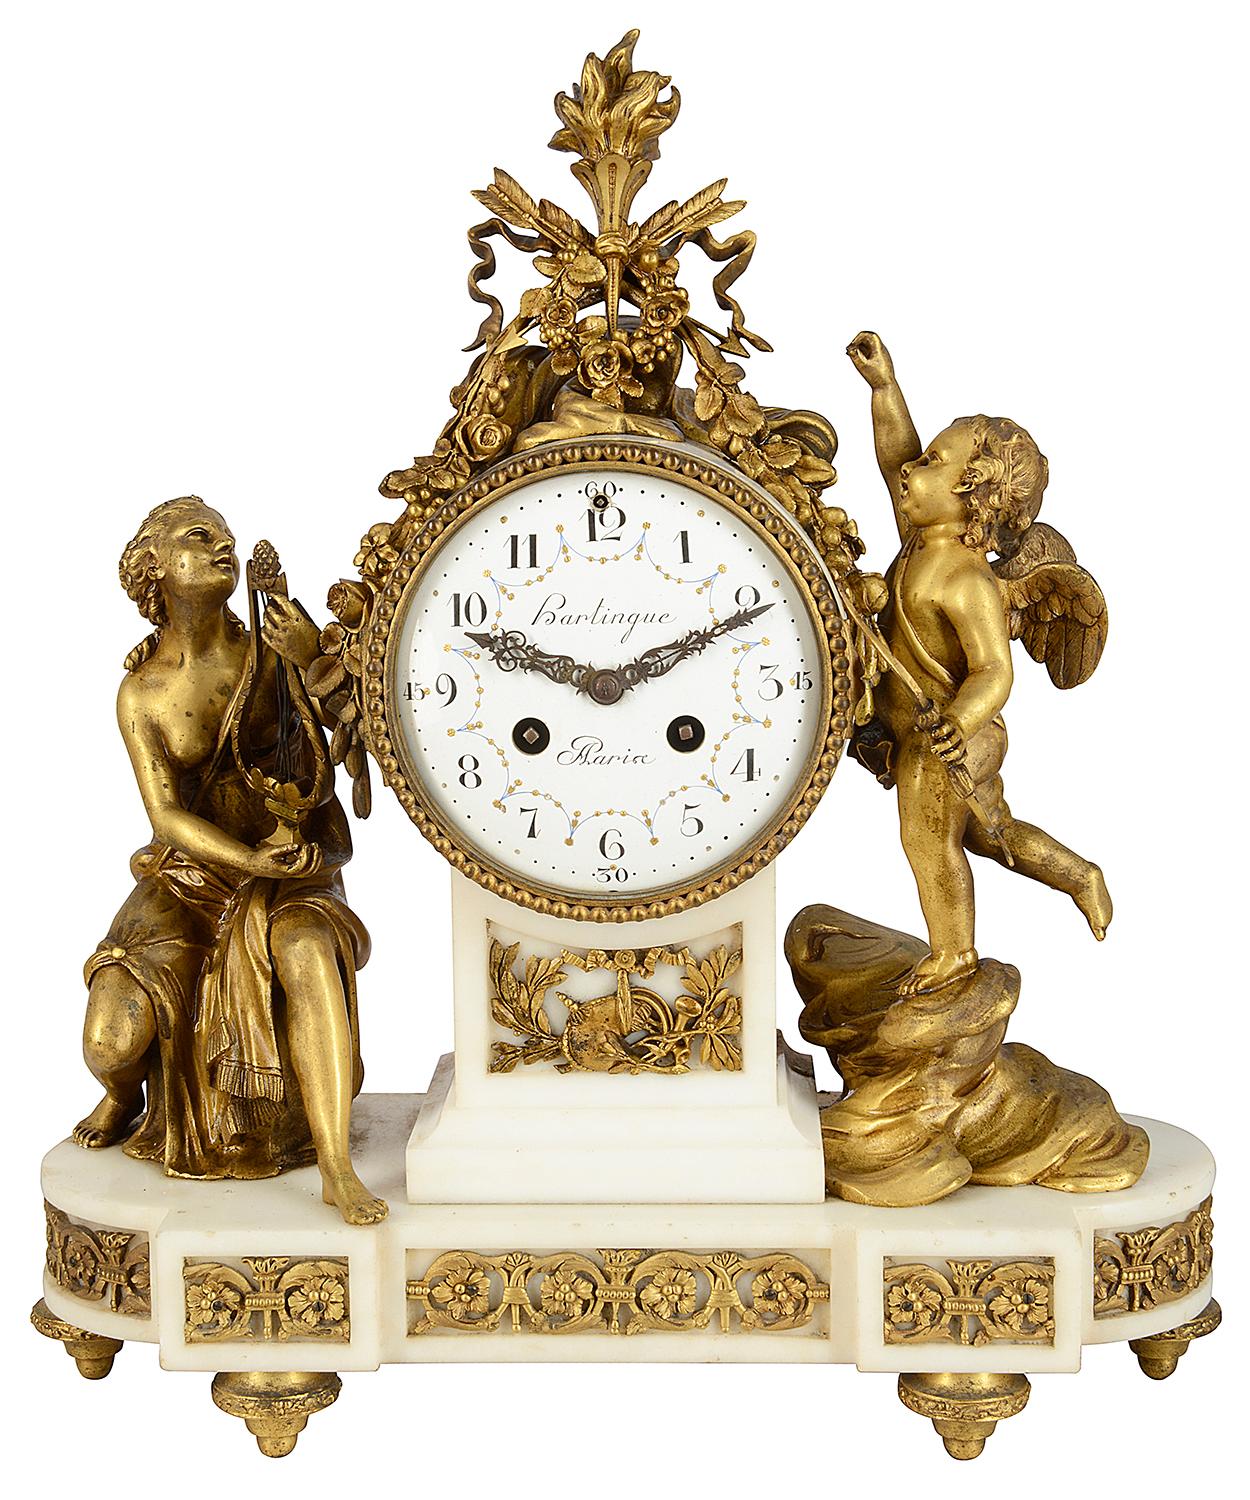 Eine sehr gute Qualität klassischen 19. Jahrhundert Französisch vergoldet Ormolu Kaminsims Uhr gesetzt, mit einer Flamme, Pfeile und Bänder über einem weißen Emaille Zifferblatt, eine acht Tage Dauer Schlagwerk Uhrwerk. Eine sitzende, halbnackte